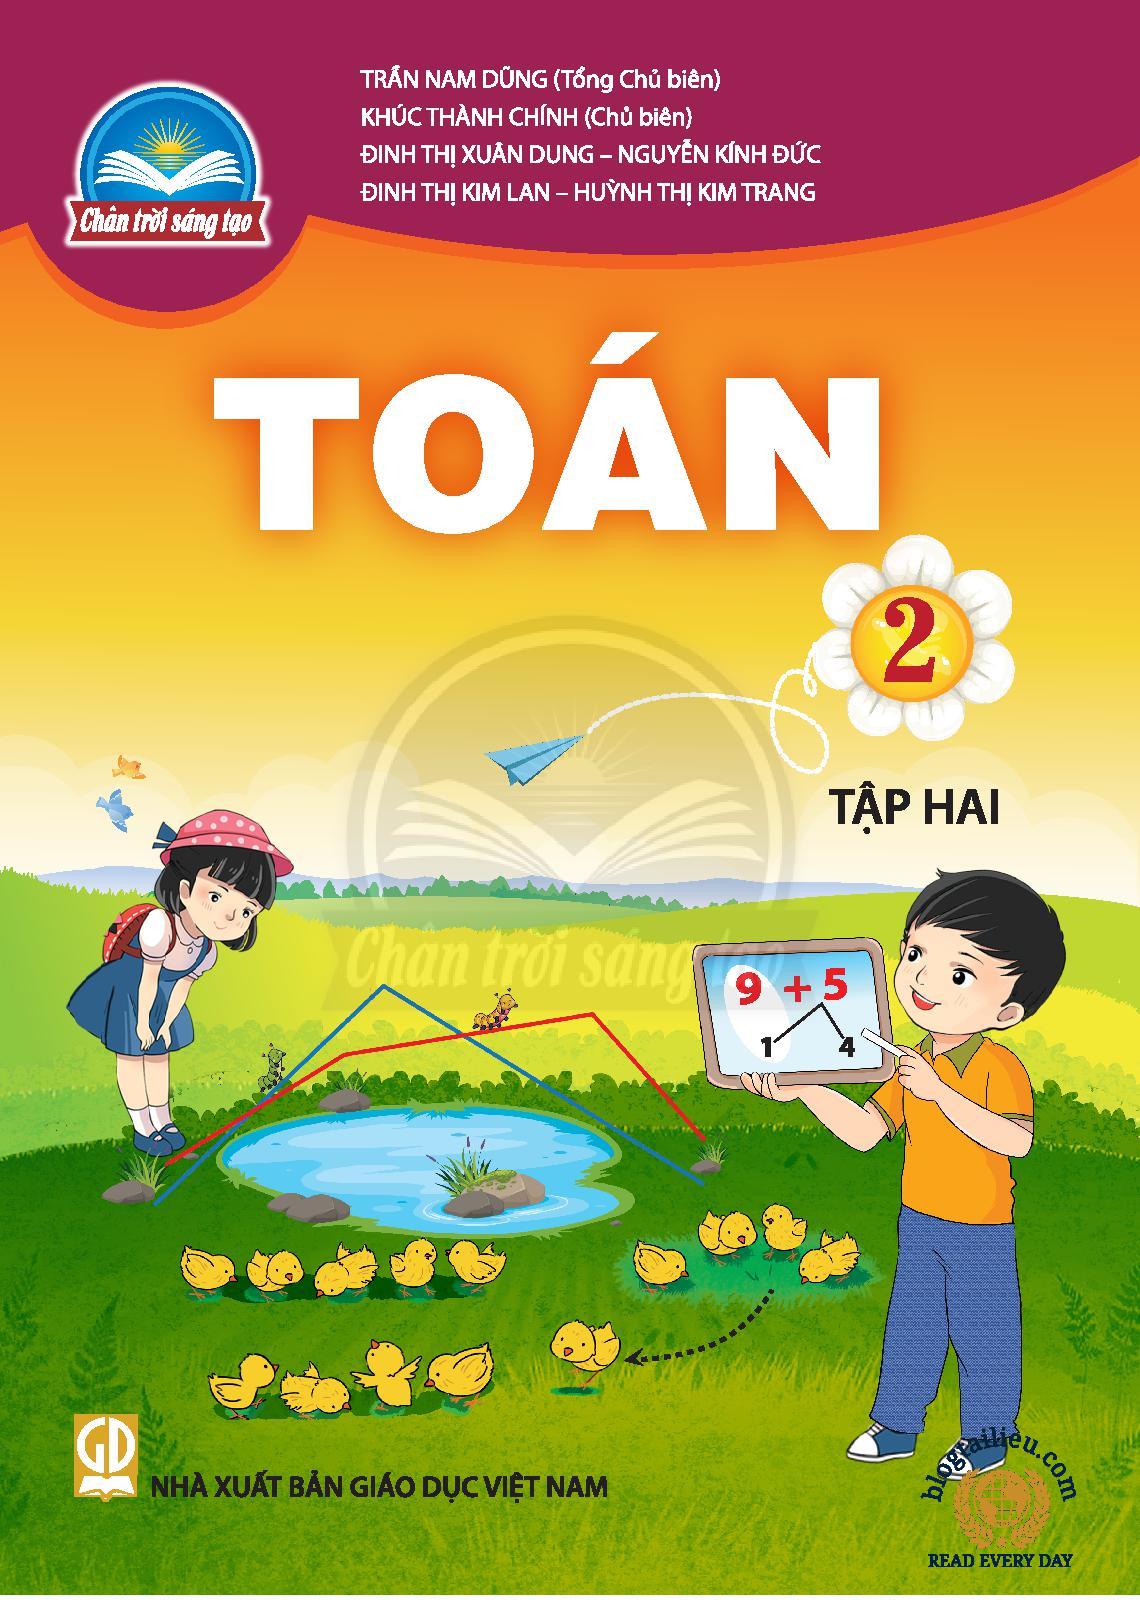 toan-2-tap-hai-998